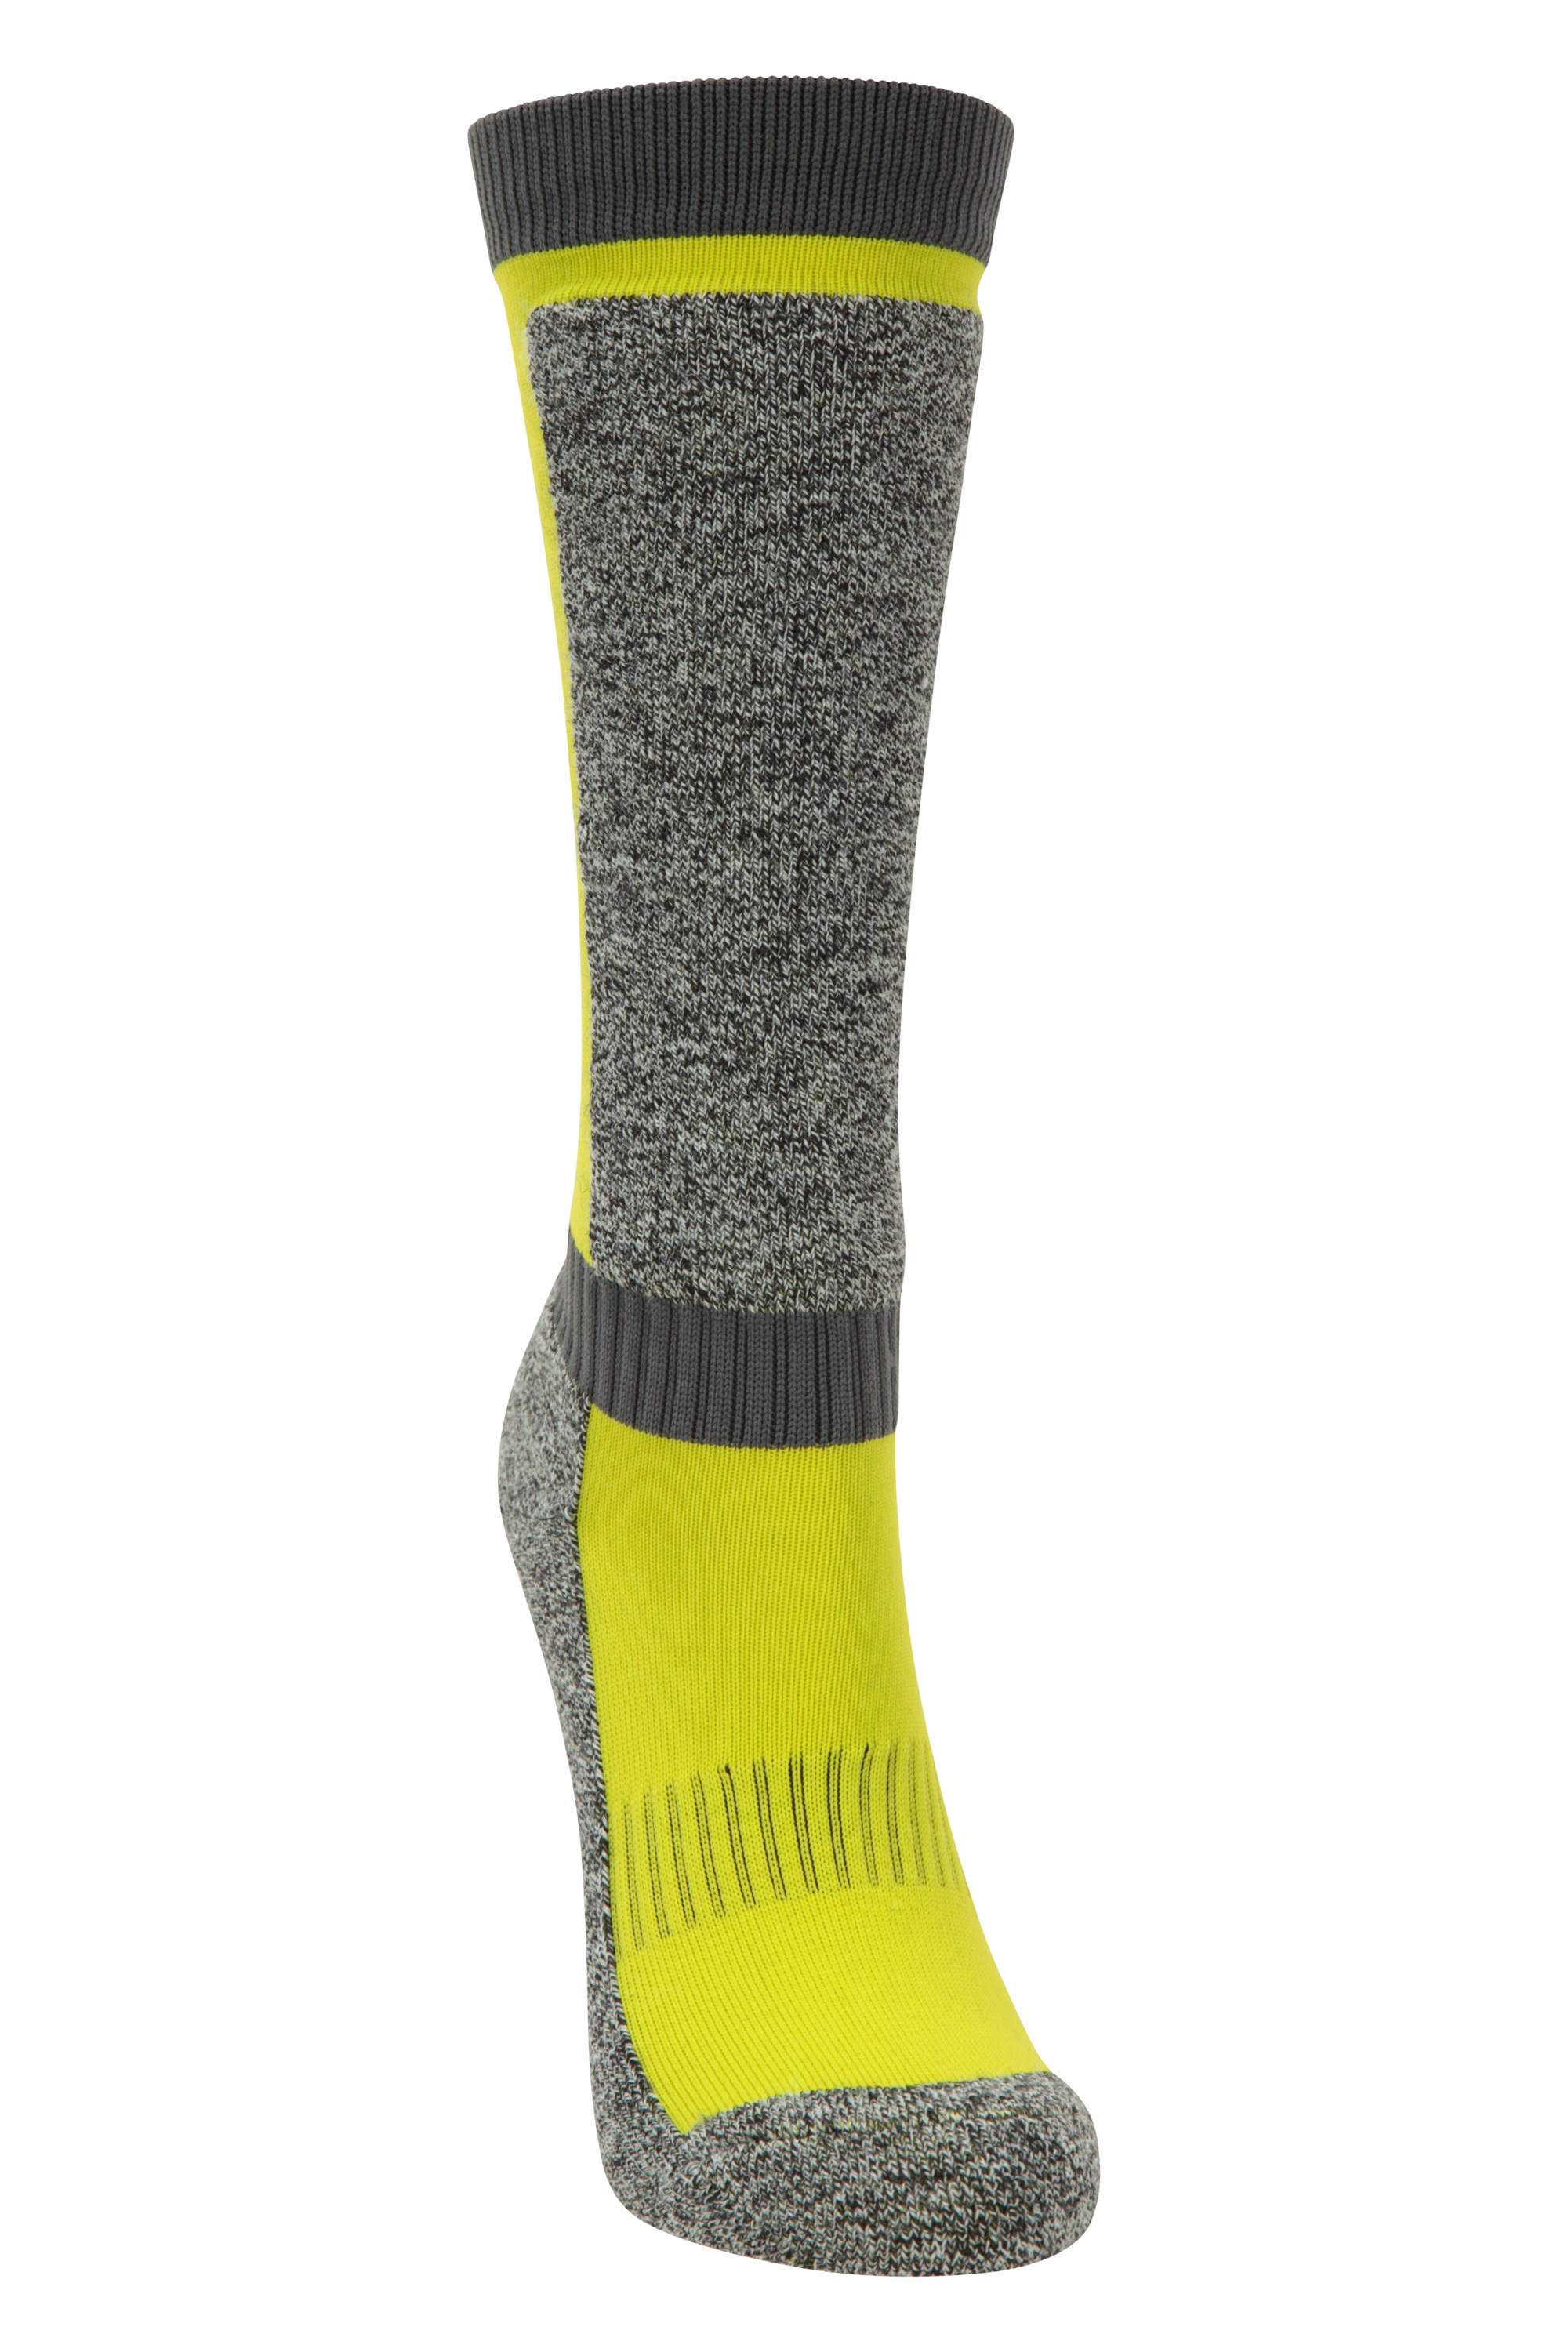 Merino Technical Kids Ski Socks - Yellow